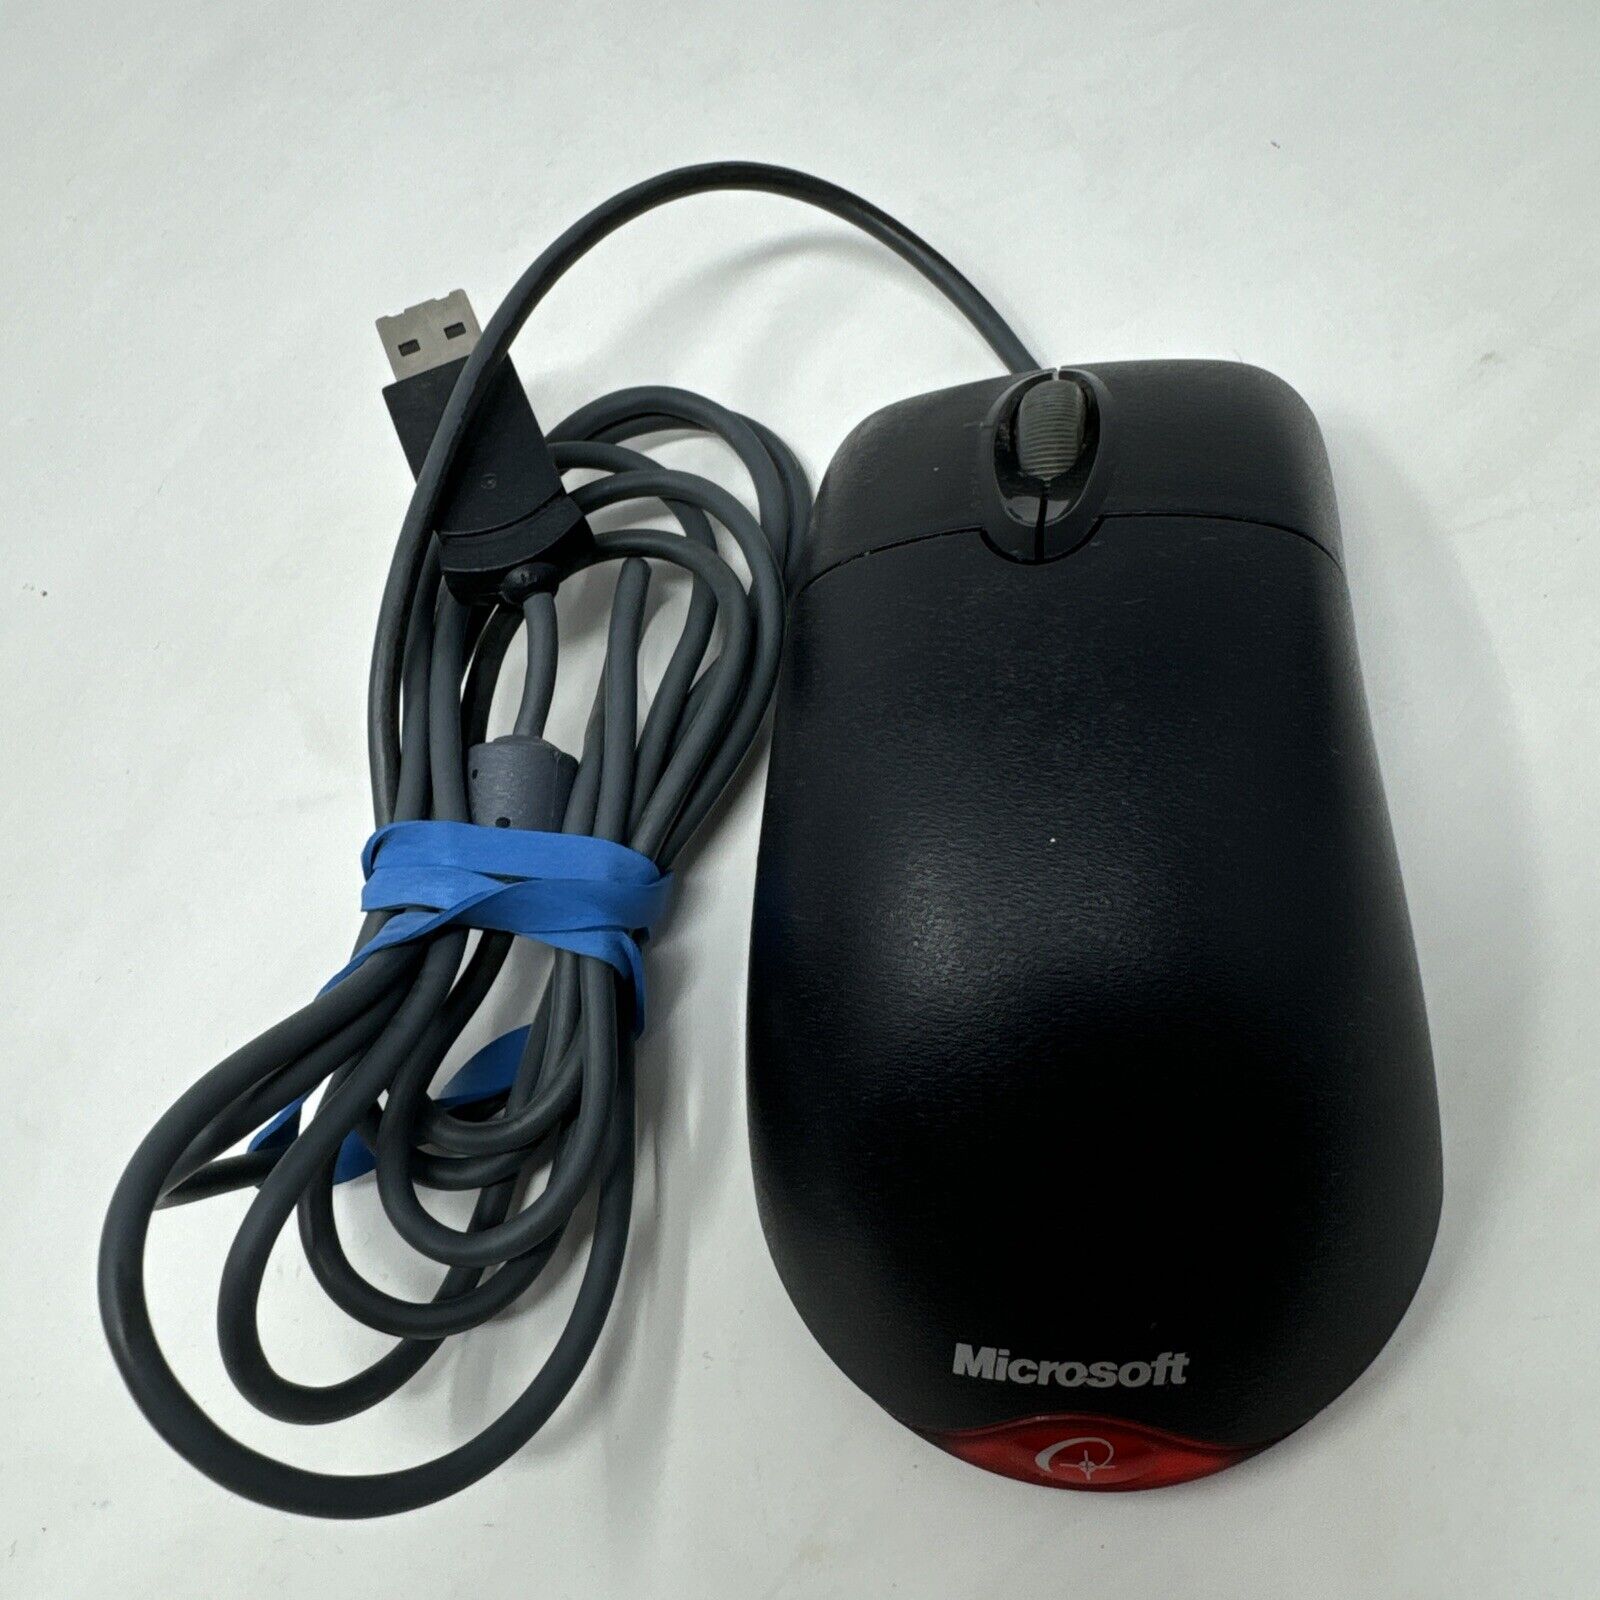 Vintage Black Microsoft Wheel Mouse Optical USB Mouse 1.1/1.1a